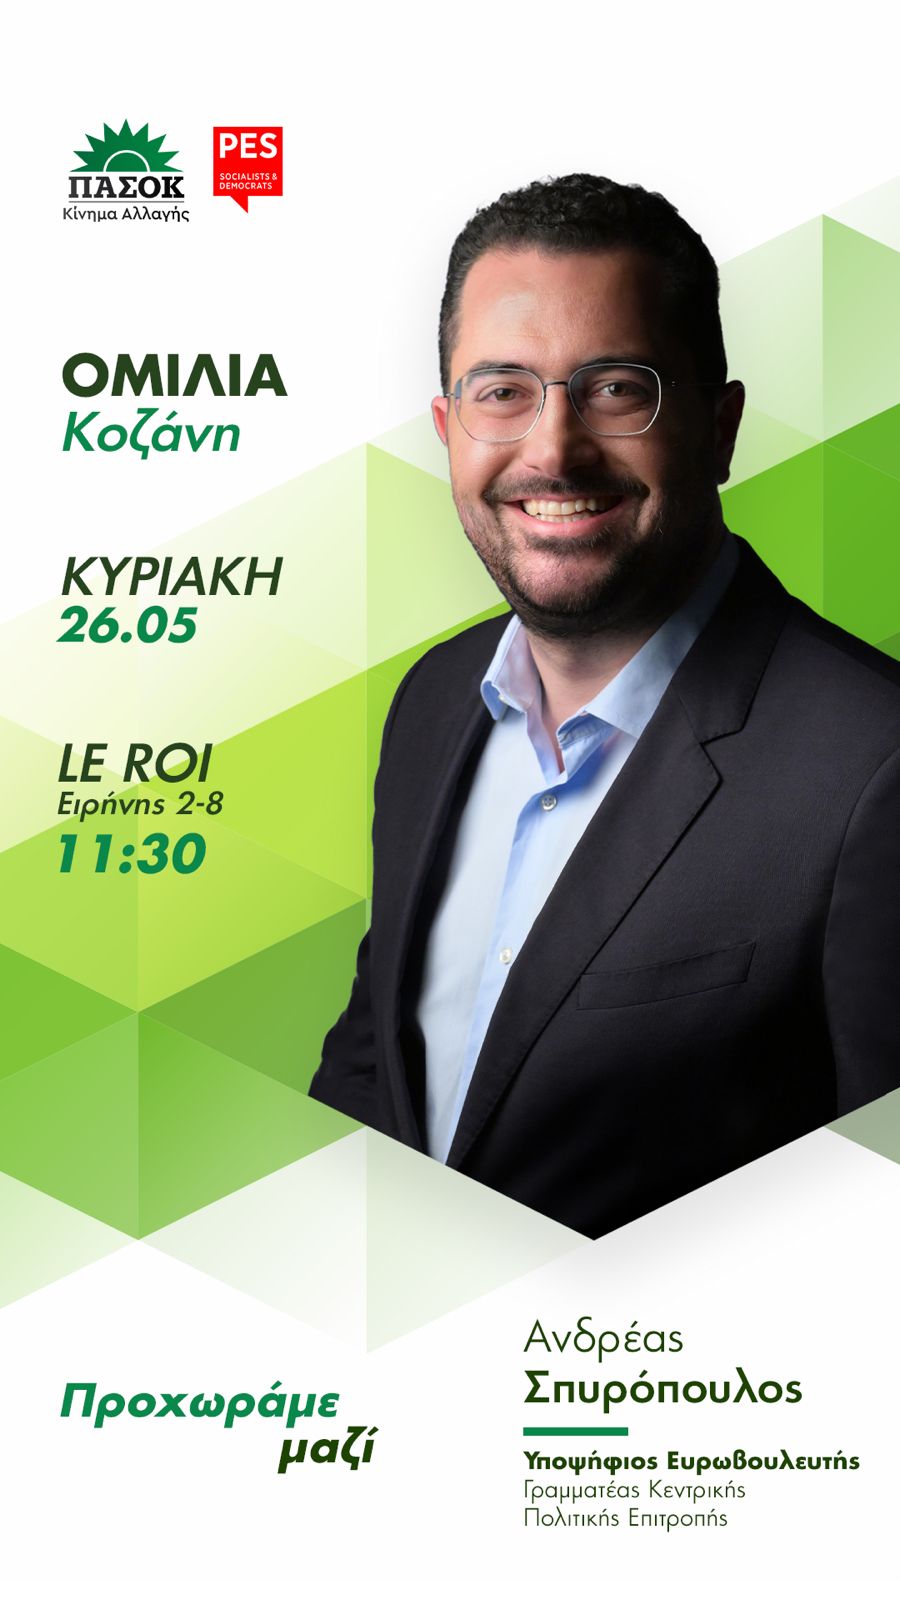 Την Κυριακή 26 Μαΐου  ο Ανδρέας Σπυρόπουλος, Γραμματέας Κ.Π.Ε. και υποψήφιος ευρωβουλευτής του ΠΑΣΟΚ-Κινήματος Αλλαγής θα επισκεφθεί την Κοζάνη. Ο κ. Σπυρόπουλος θα πραγματοποιήσει ομιλία στο Le Roi (Ειρήνης 2-8) στις 11:30.